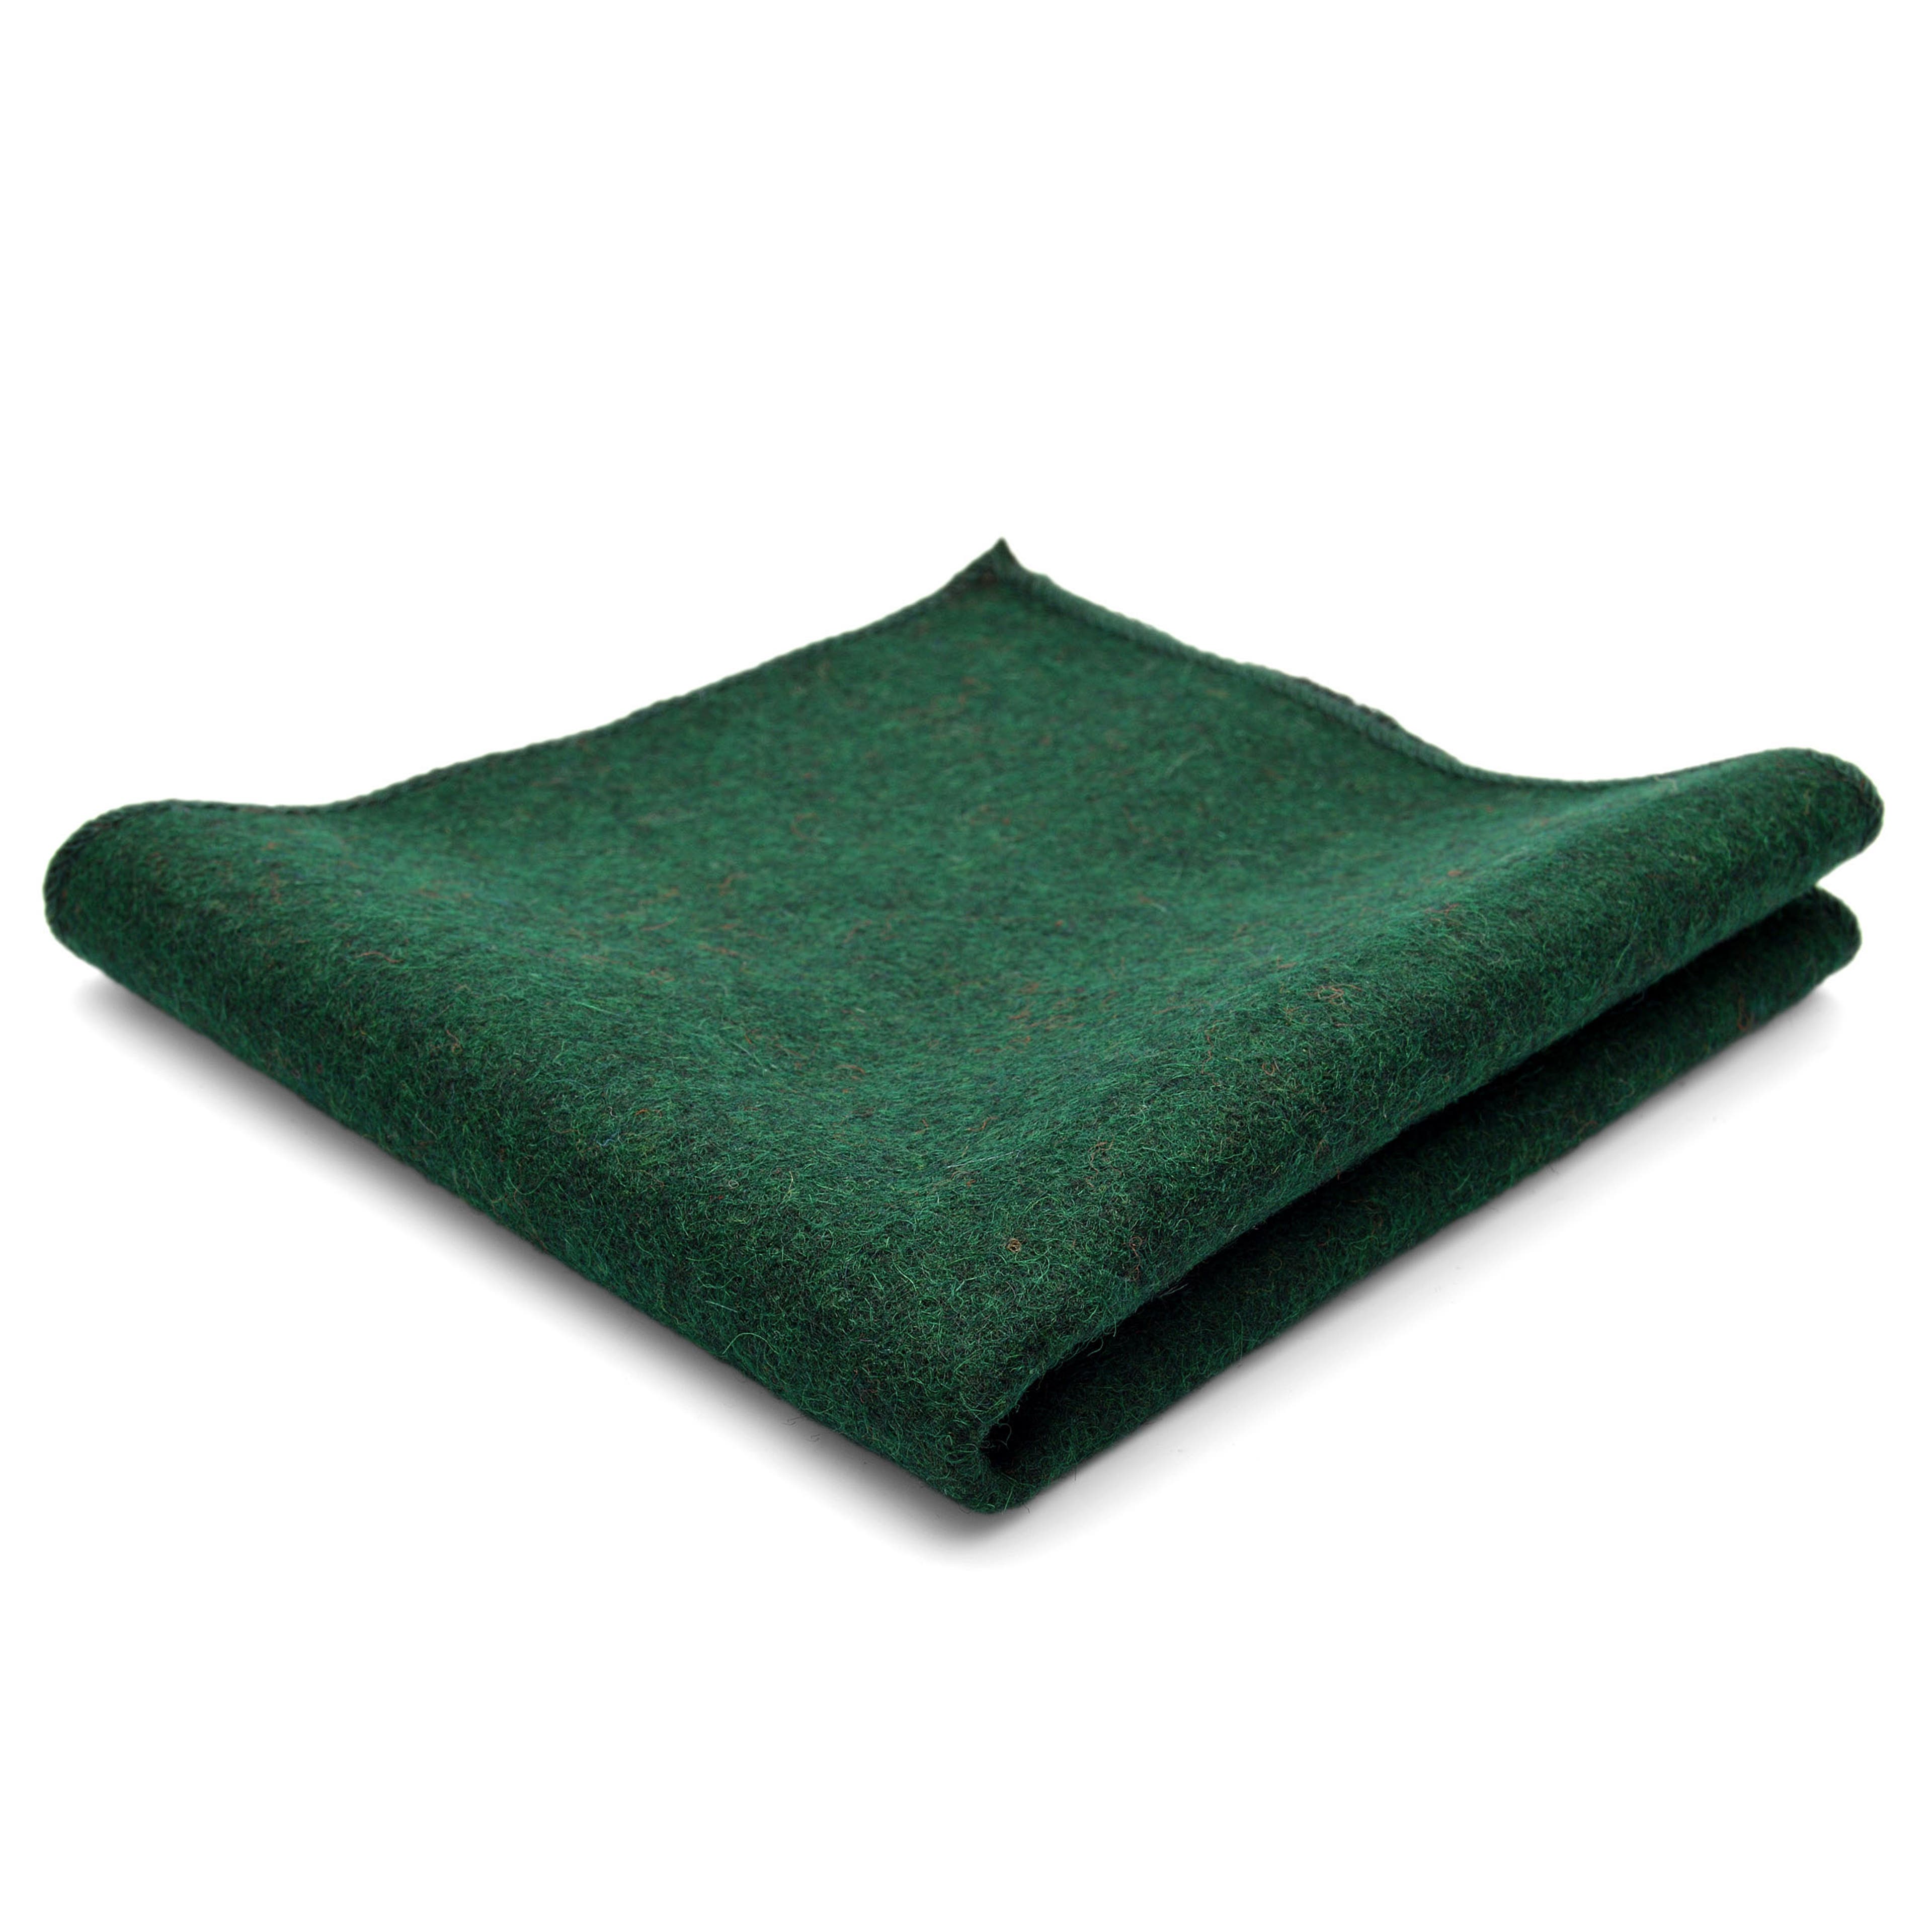 Pochette de costume en laine verte, cousue main